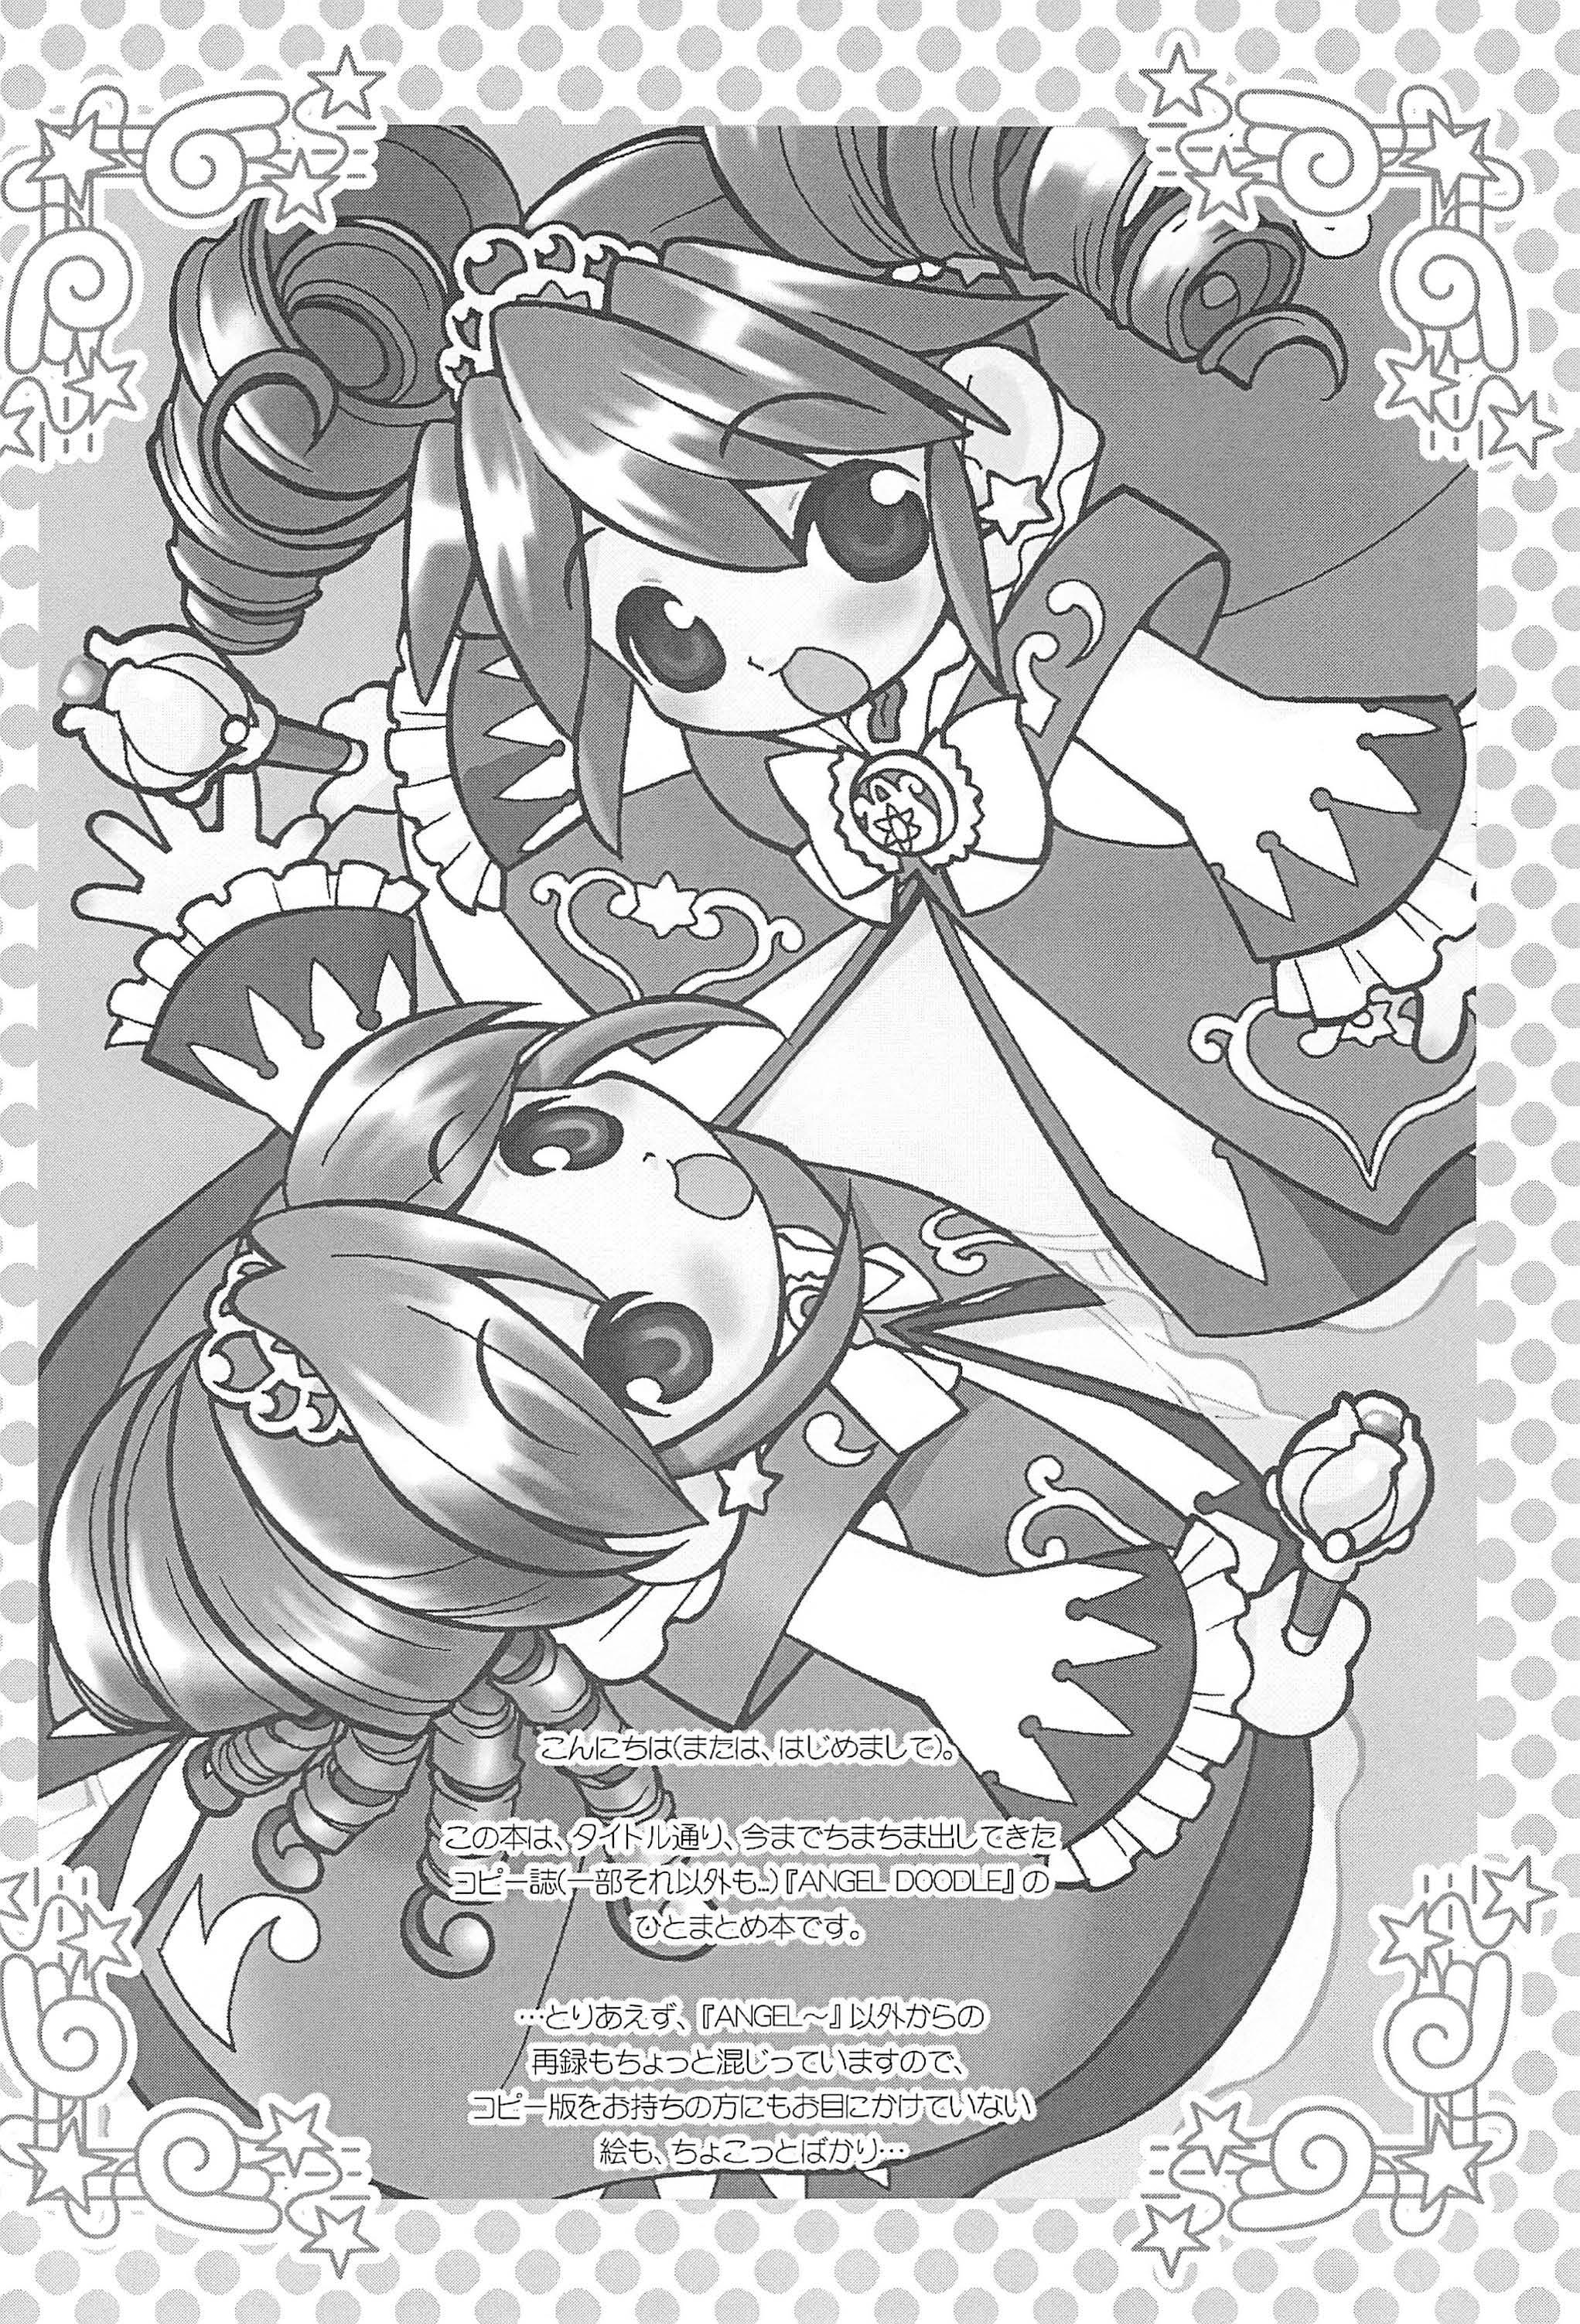 Amature Sex Tapes Angel Doodle Mega-Remix - Fushigiboshi no futagohime Hardon - Page 4